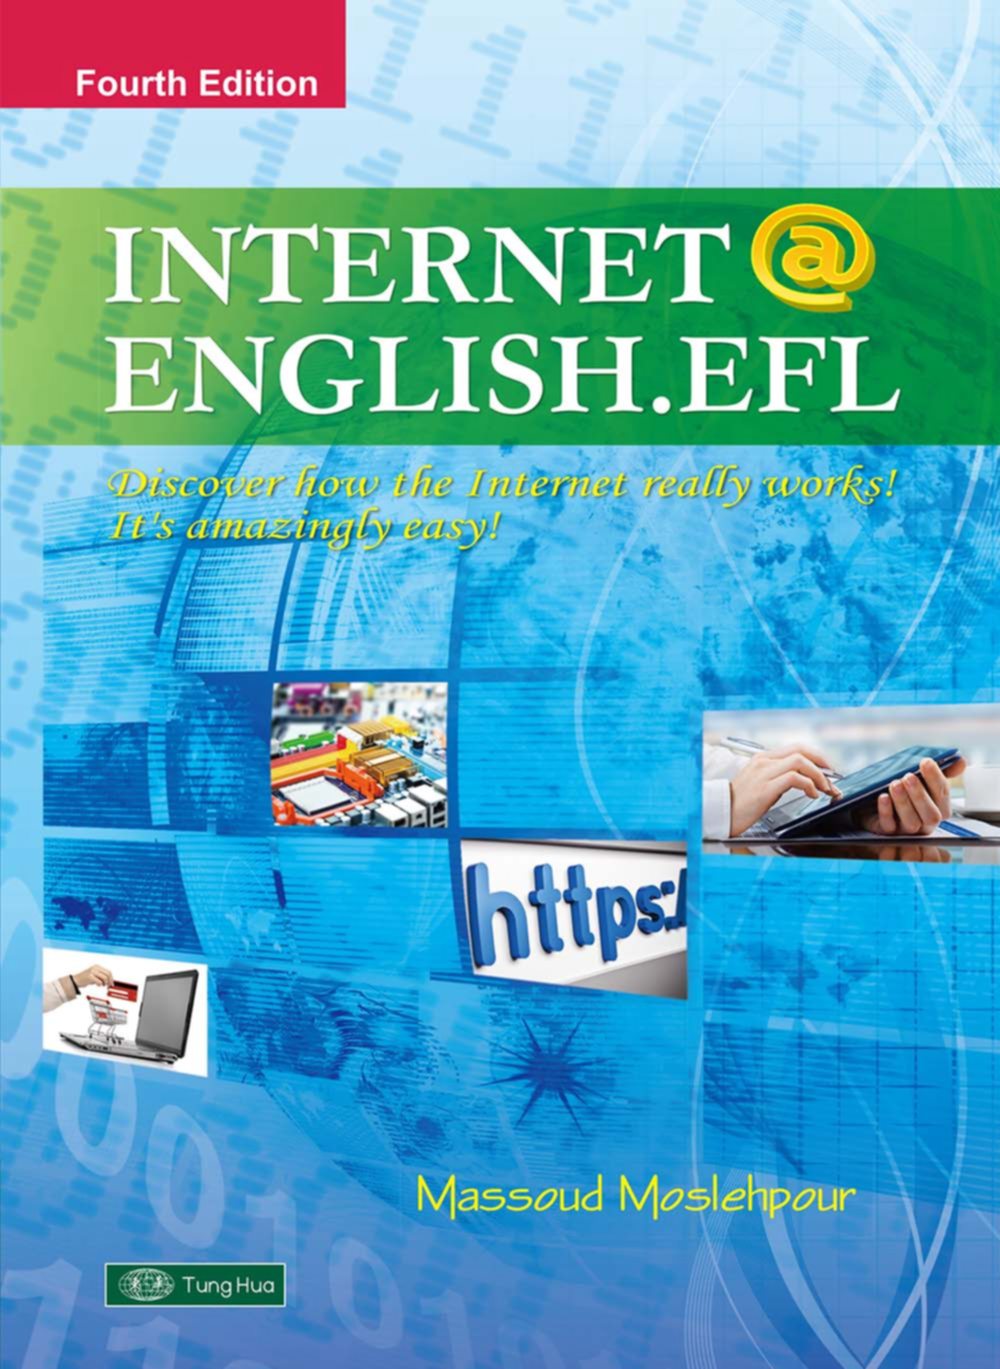 Internet @ English. EFL with M...